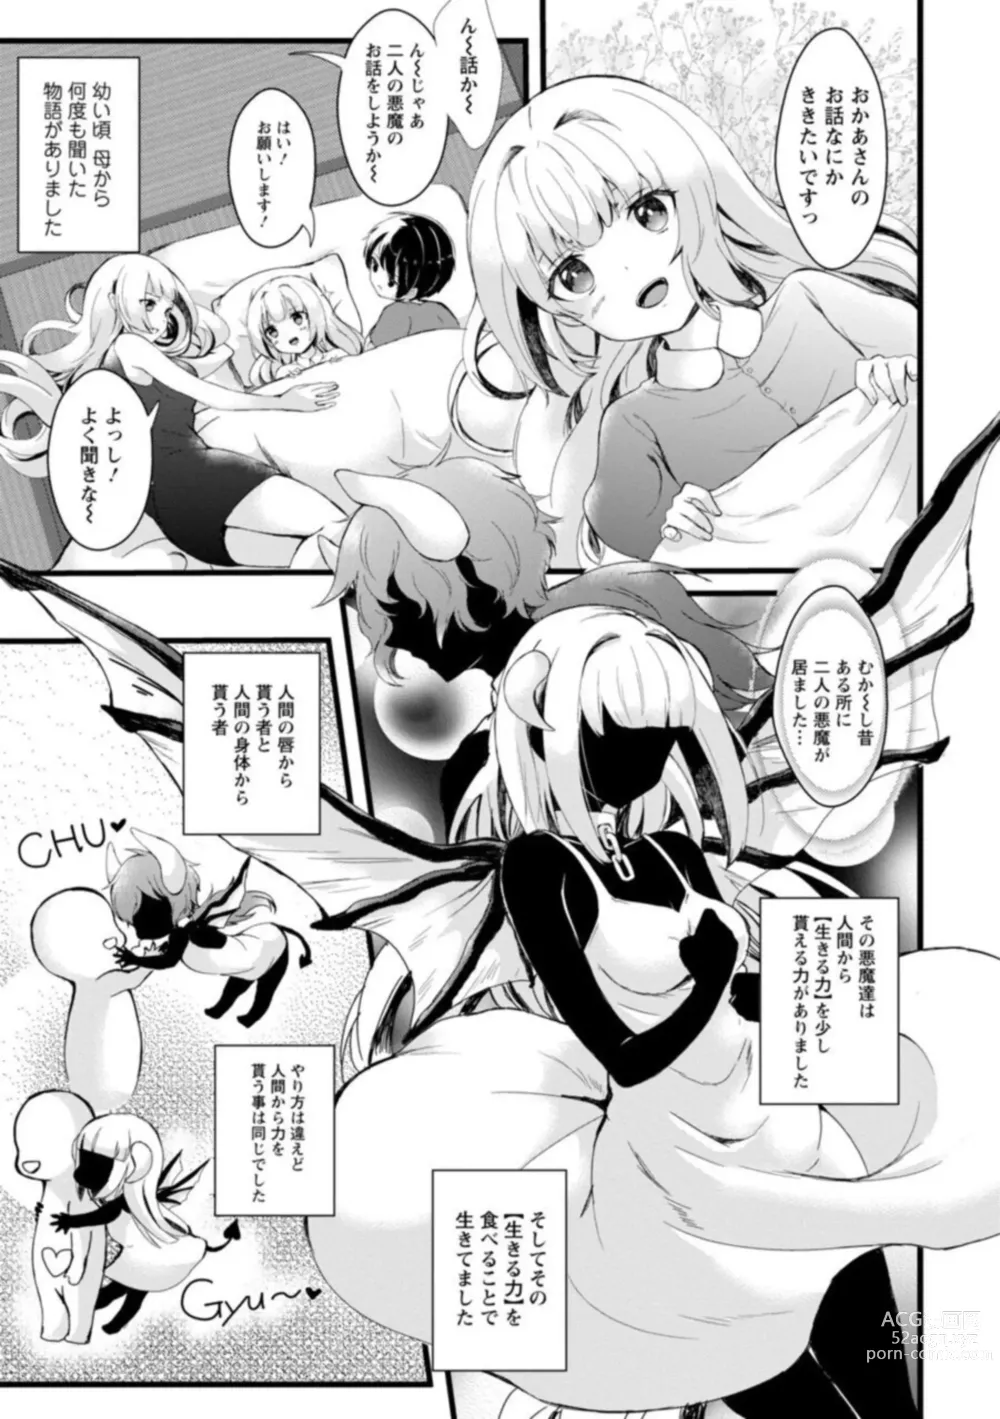 Page 3 of manga Inma no Torihiki ~ Shojonanoni oku made Sosoga re Chau! Inma no ai wa Atsuku Torokete ~ 1-2